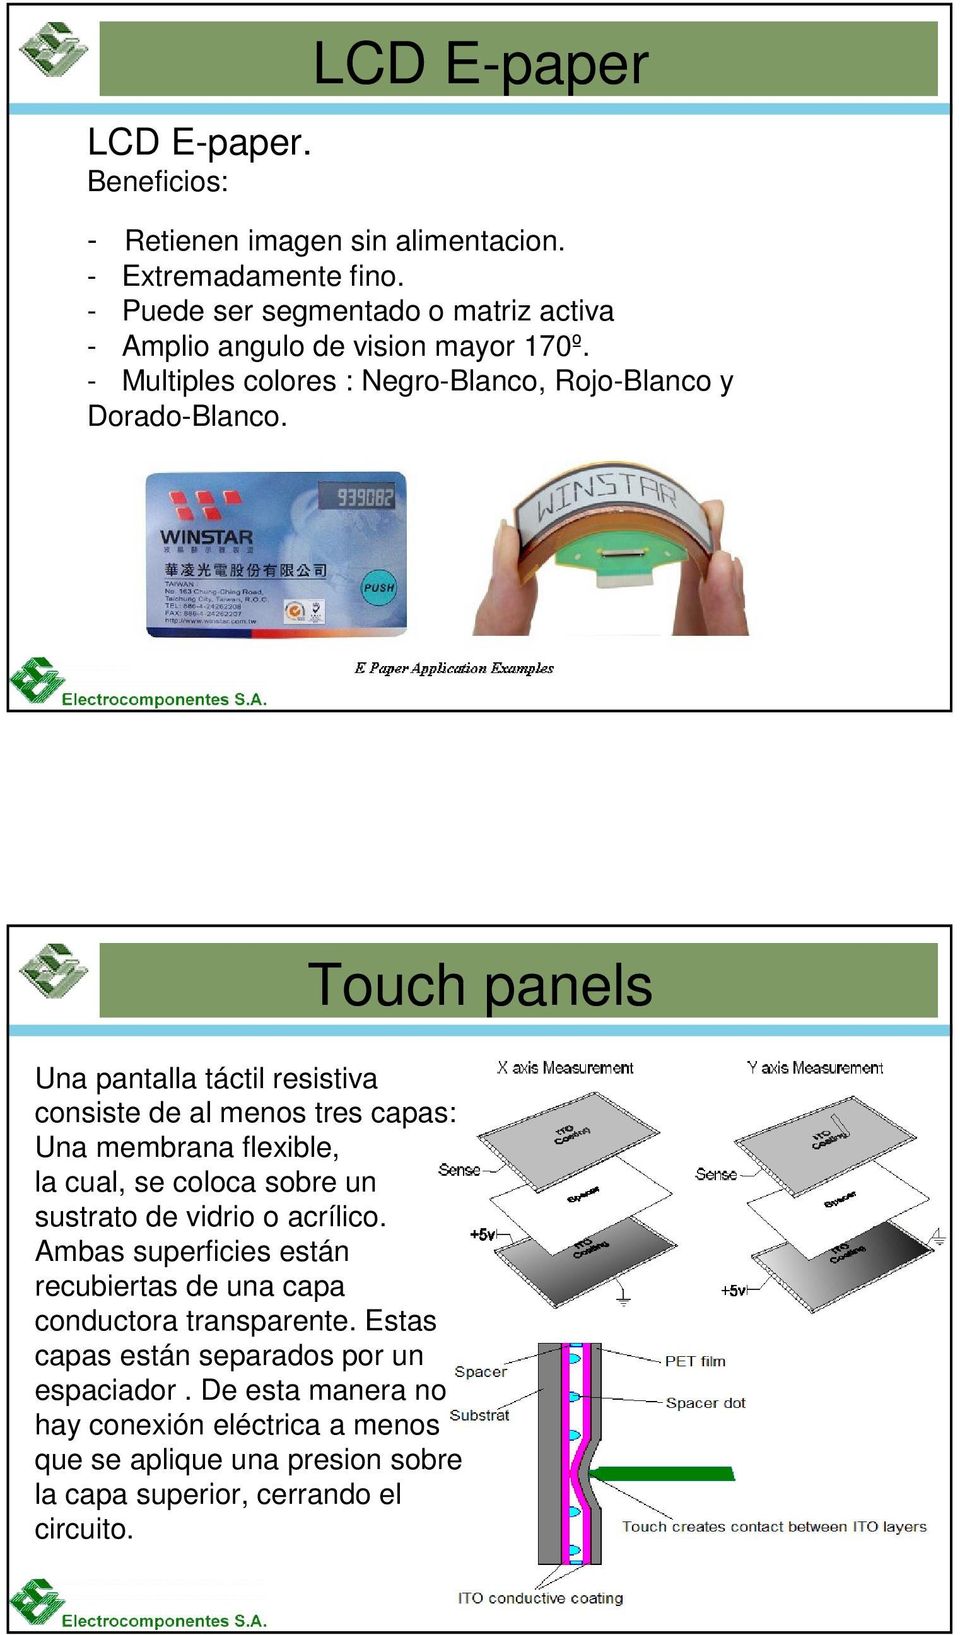 Una pantalla táctil resistiva consiste de al menos tres capas: Una membrana flexible, la cual, se coloca sobre un sustrato de vidrio o acrílico.